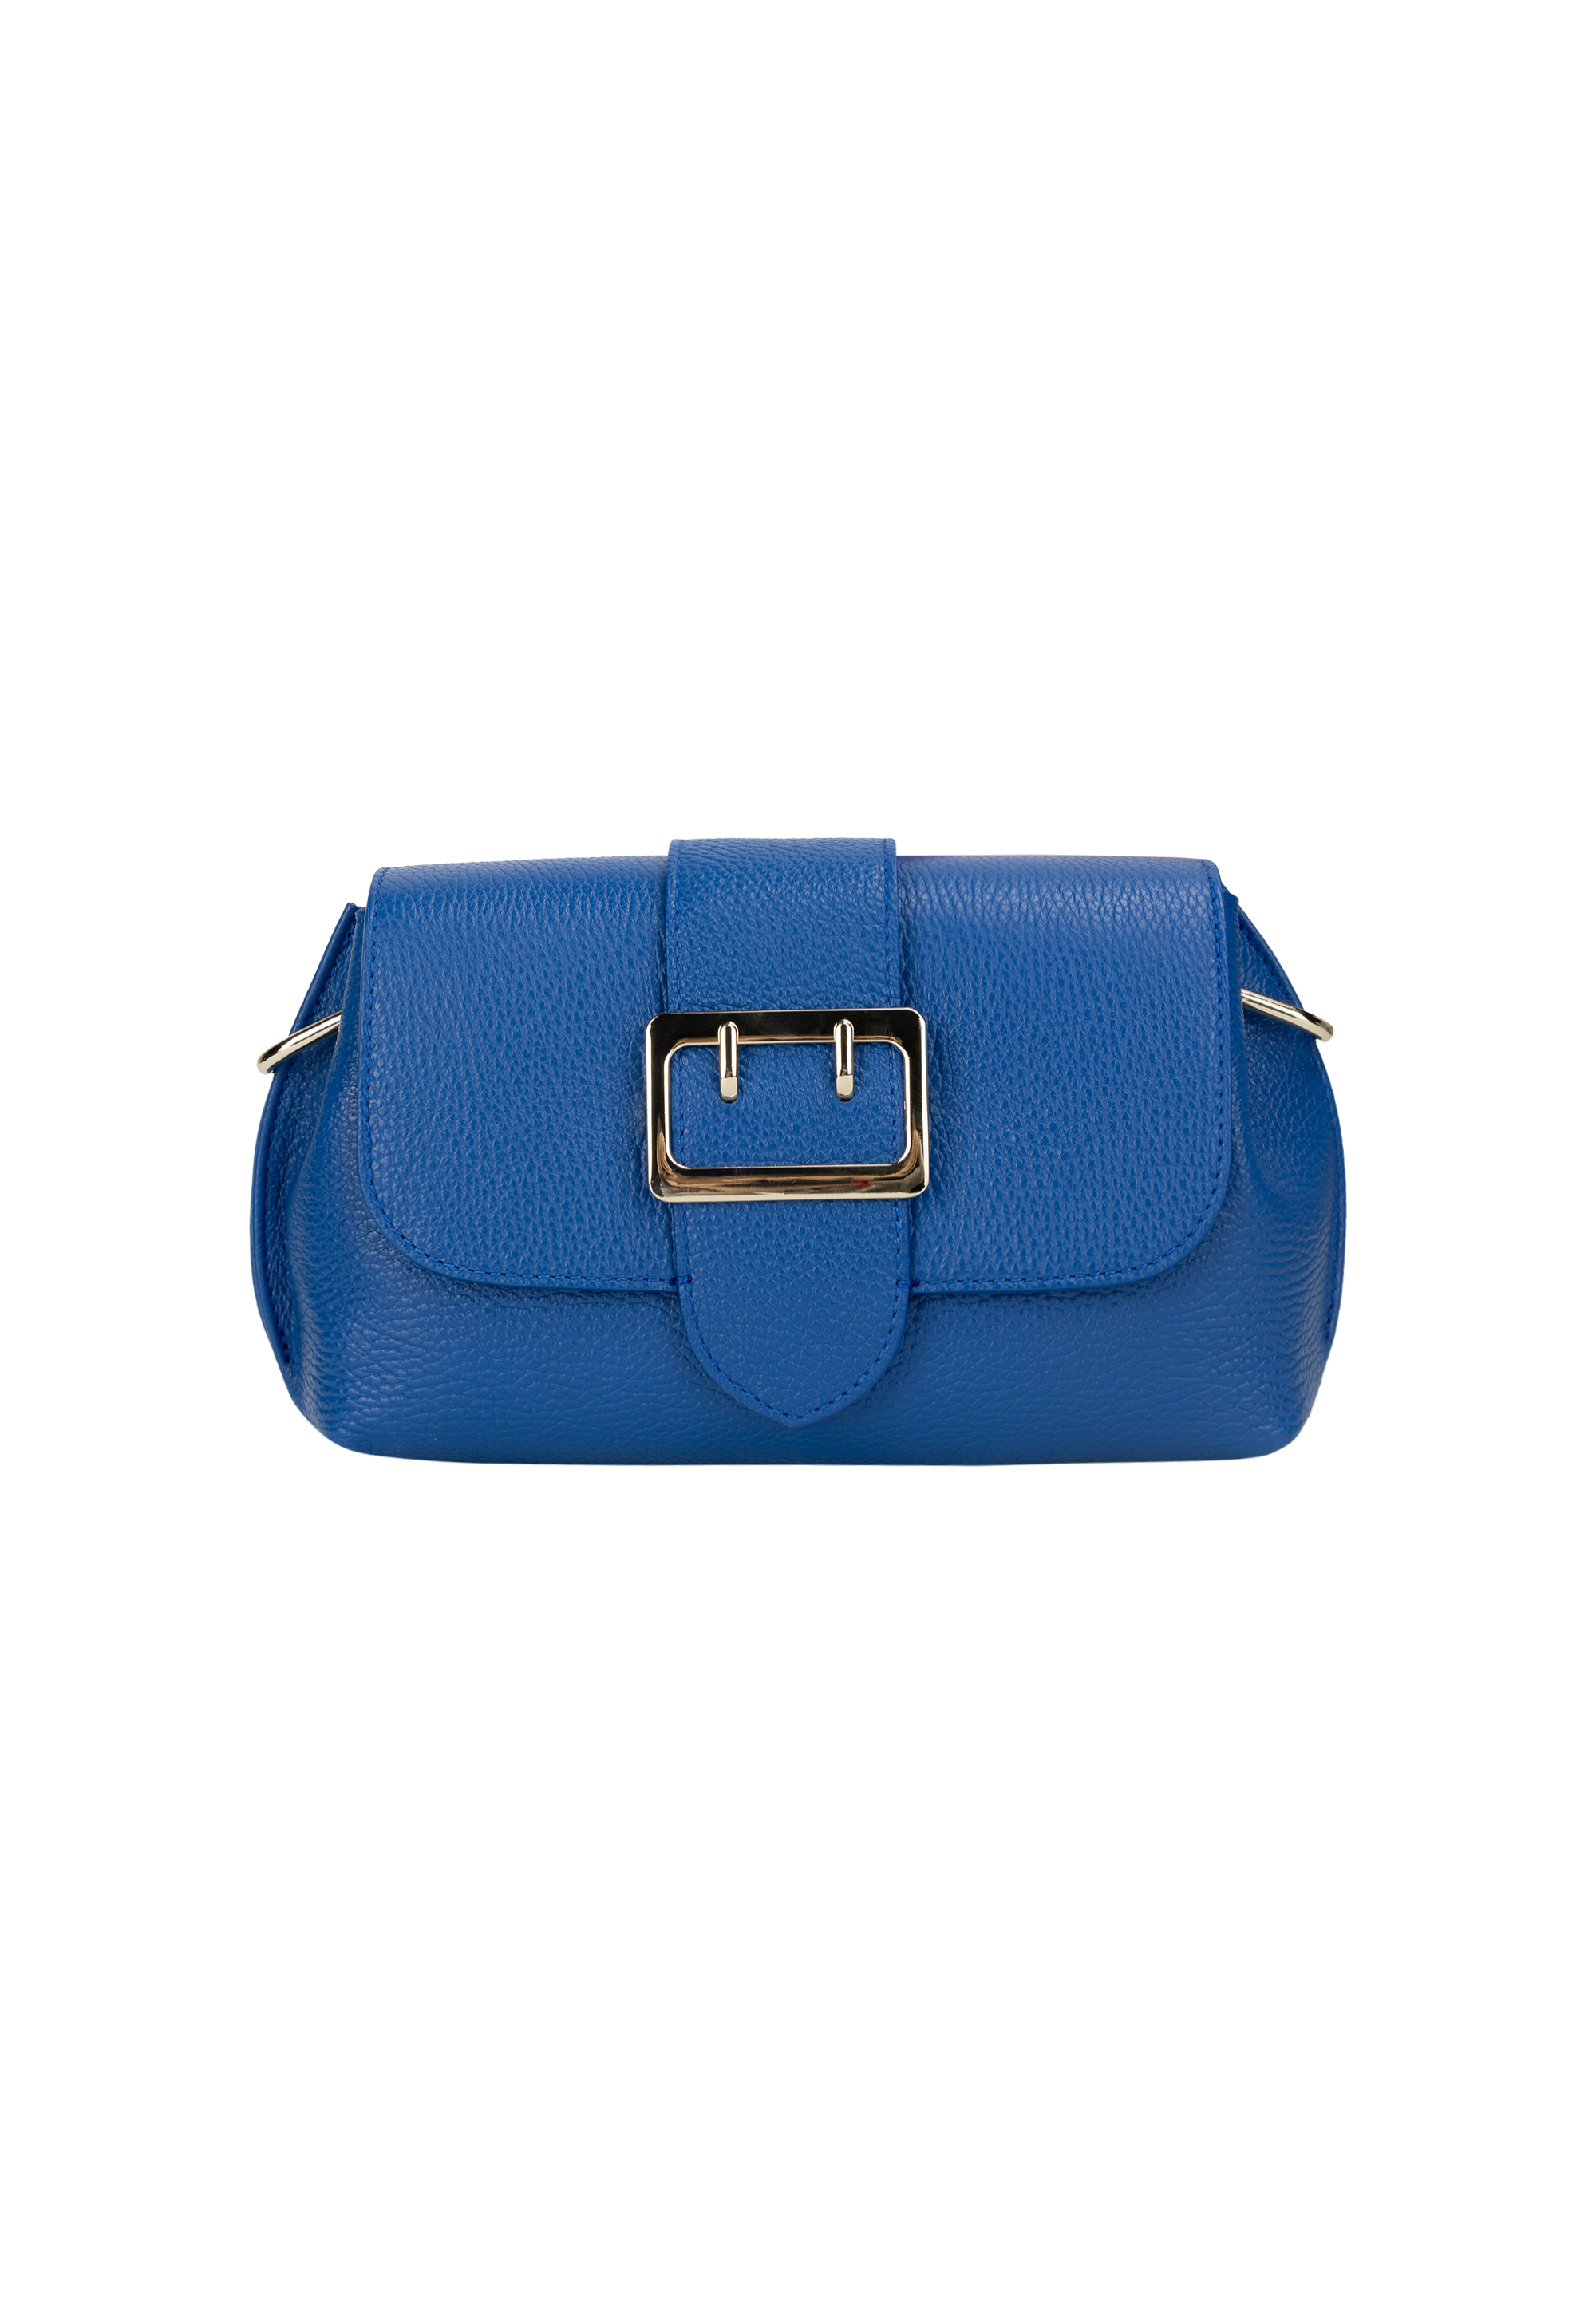 Сумка через плечо NAEMI Handtasche, цвет Azurblau сумка через плечо naemi handtasche цвет elfenbein